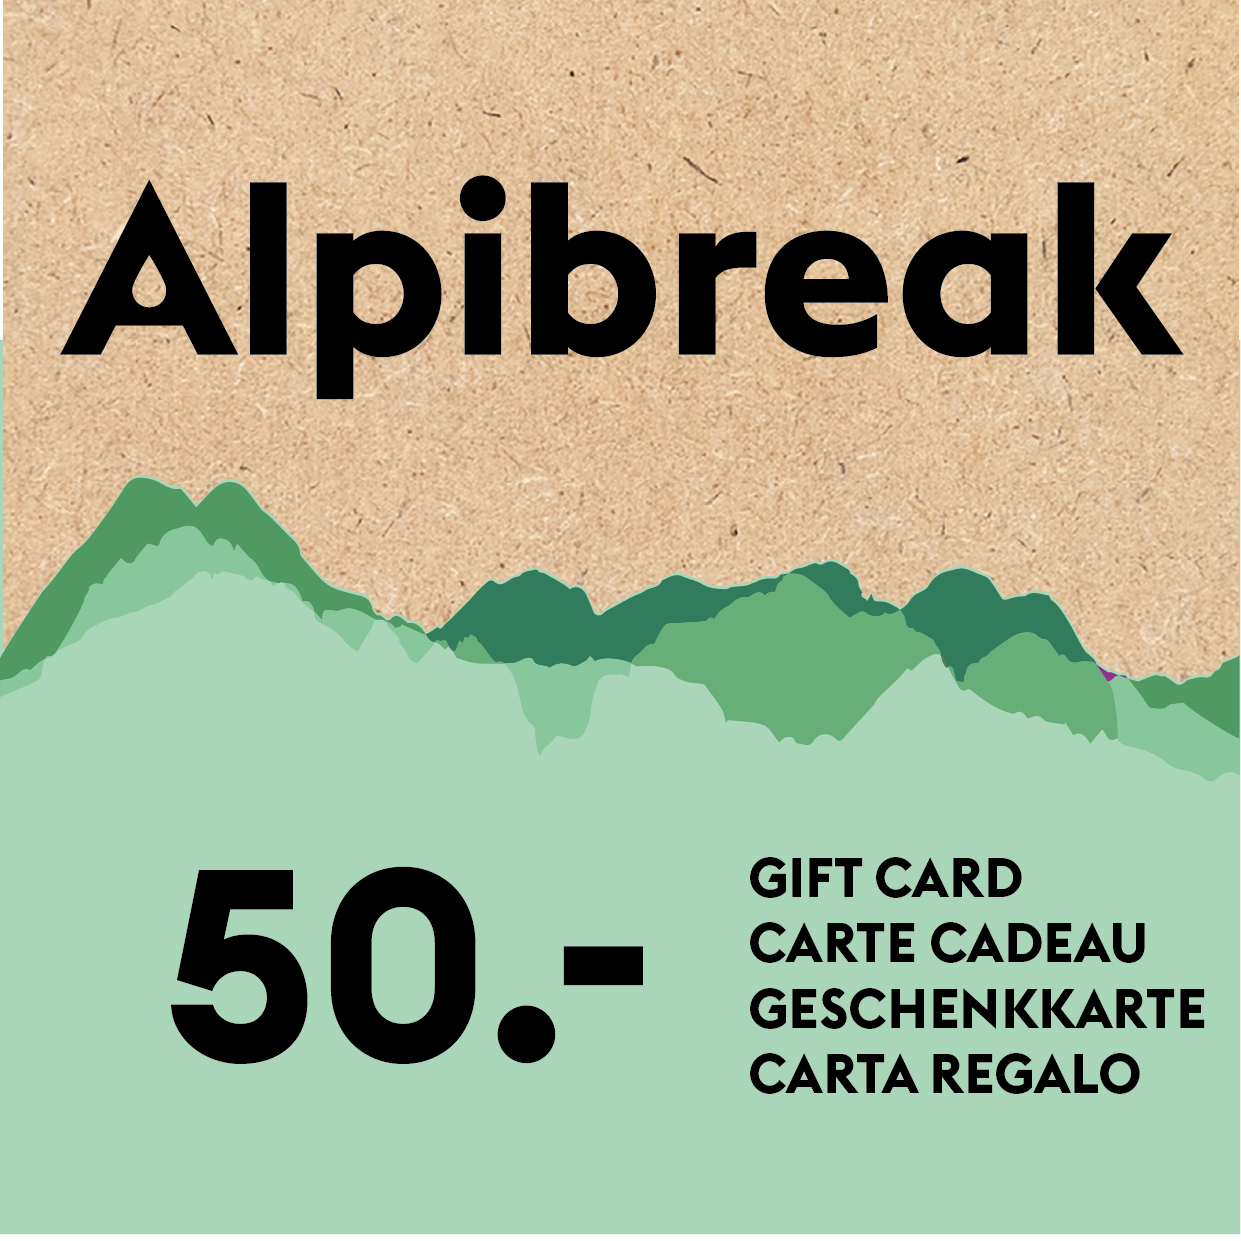 
                  
                    Alpibreak gift card
                  
                